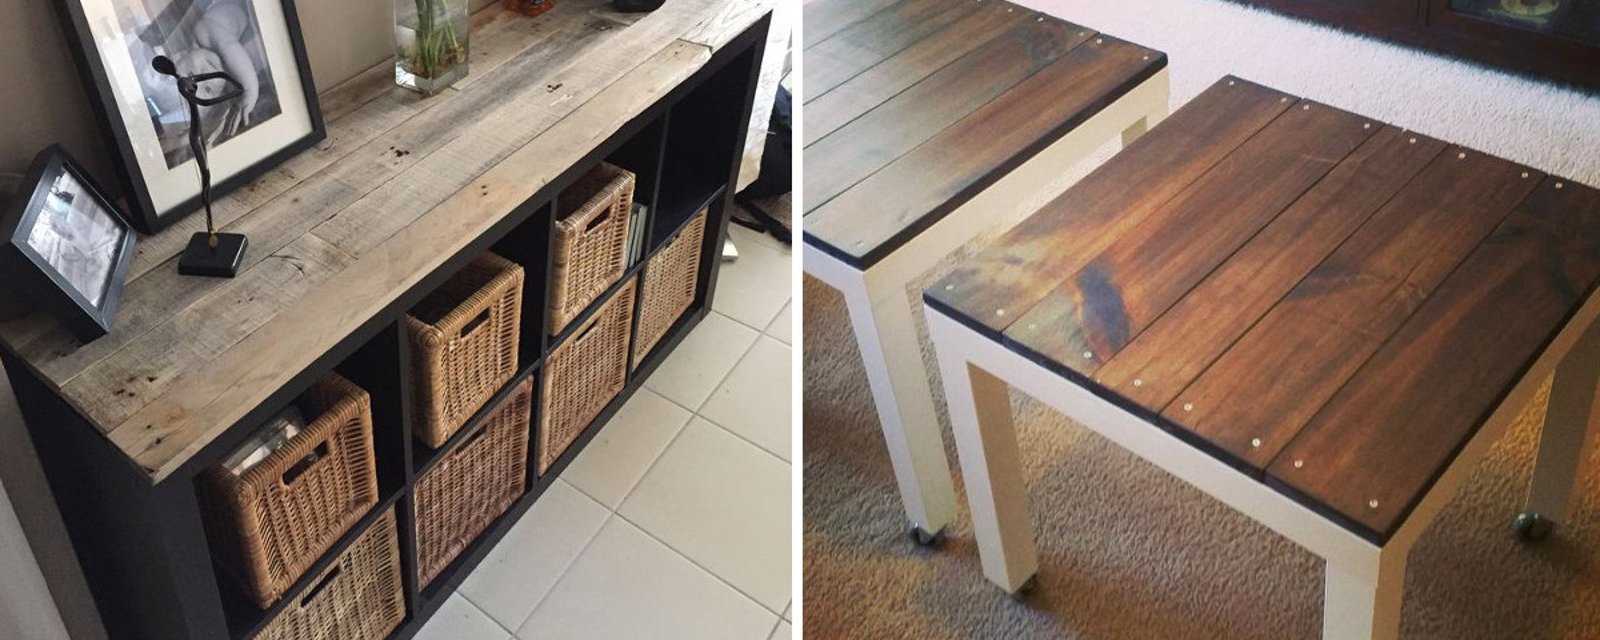 Redonnez un nouveau look à votre vieux meuble Ikea à l'aide bois de palettes